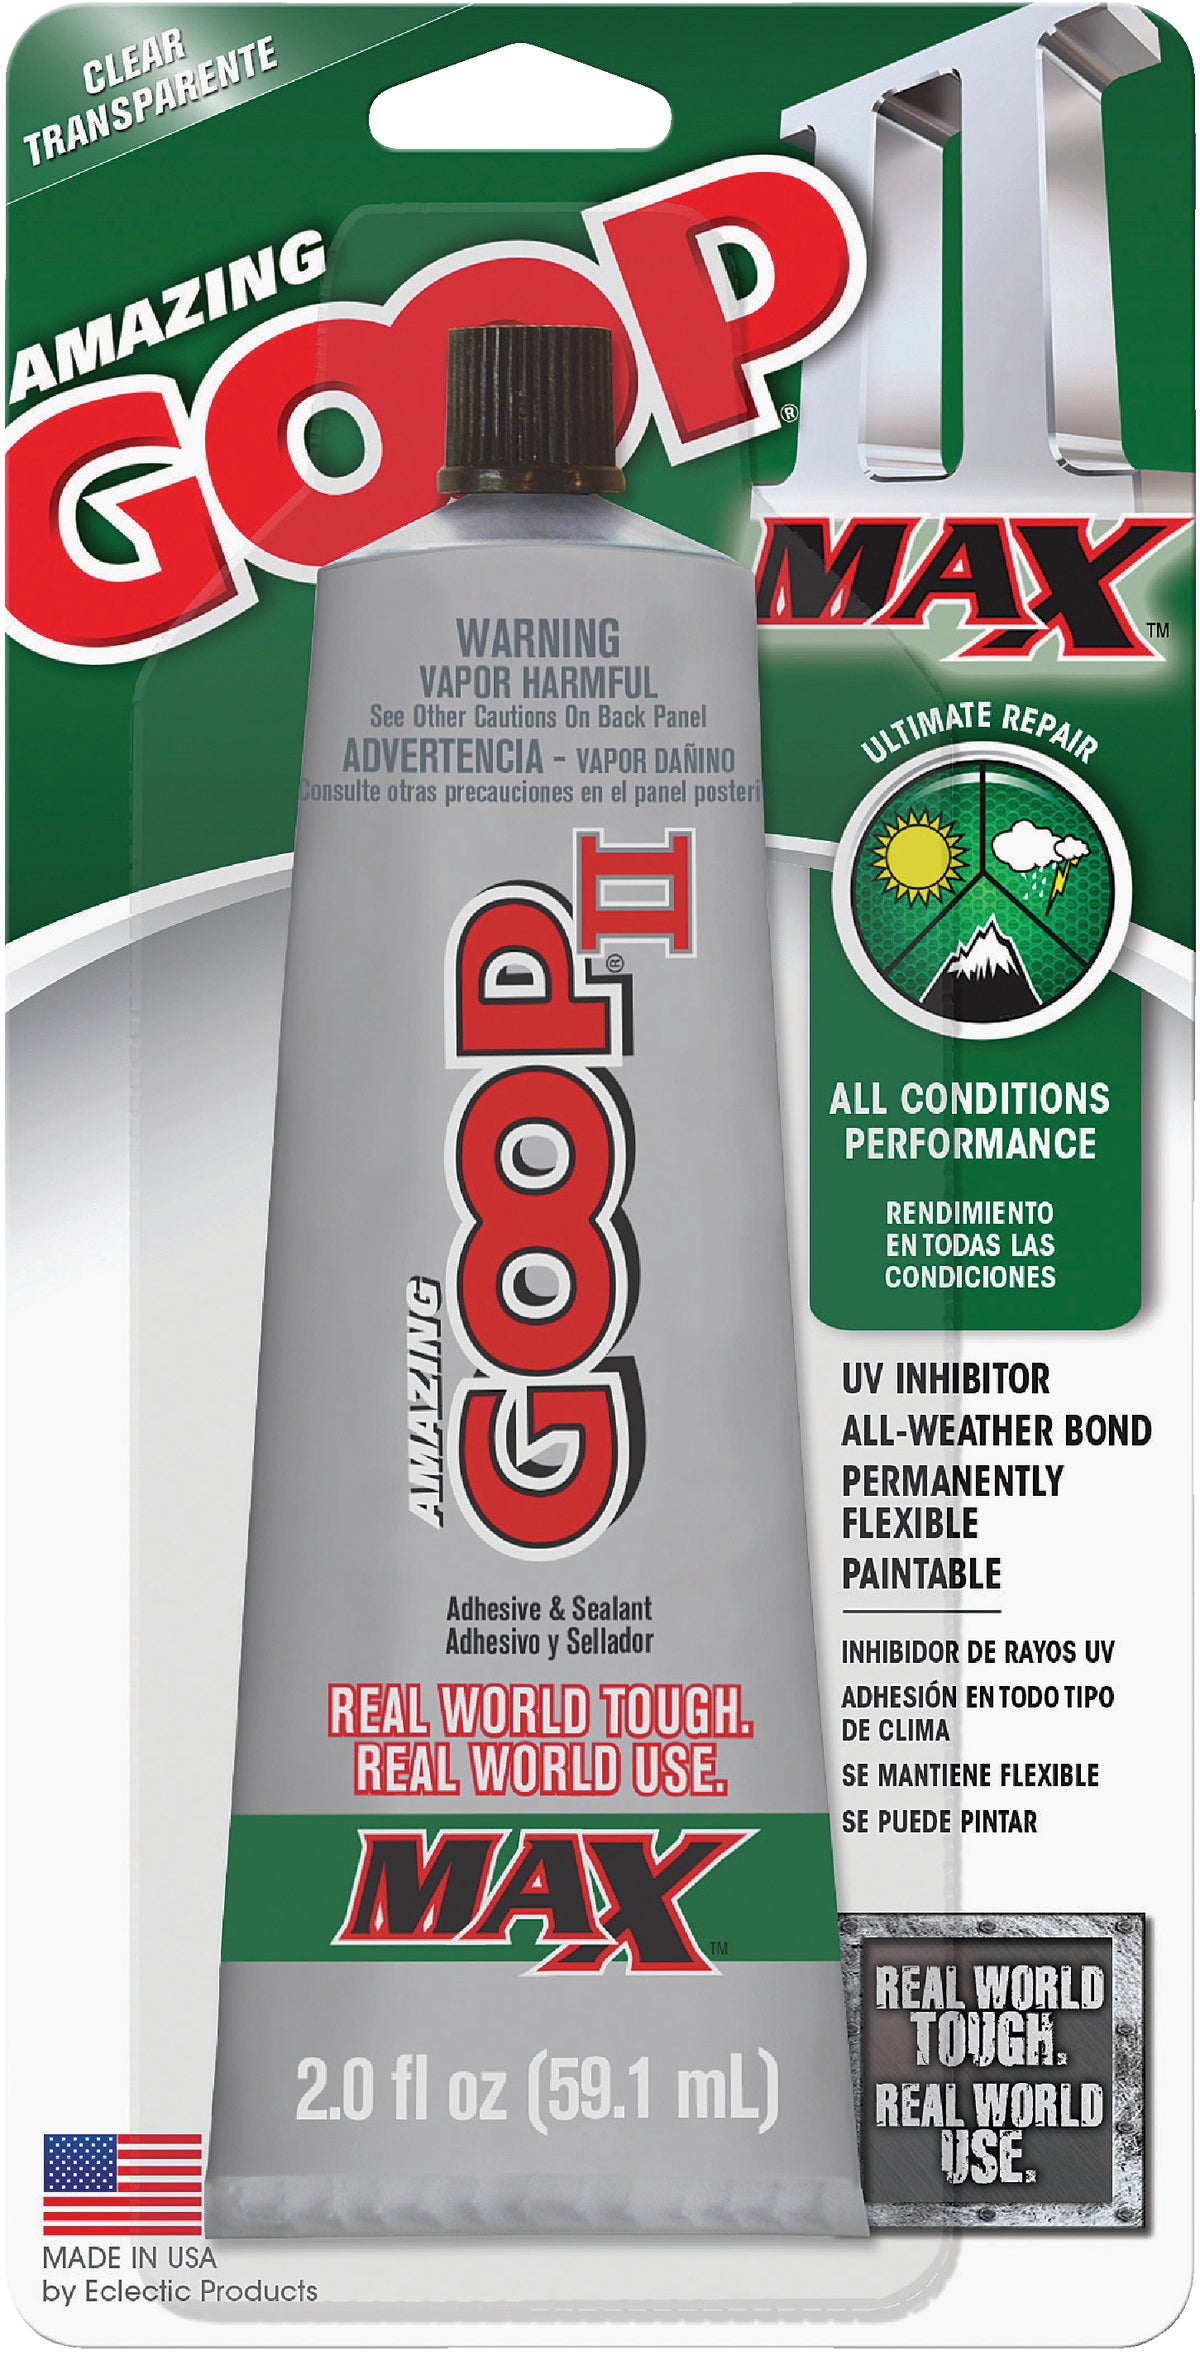 SHOE GOO Clear 109,4 ml + 1 DOSIERER / Shoegoo Kleber TUBE / Farbe:  Transparent